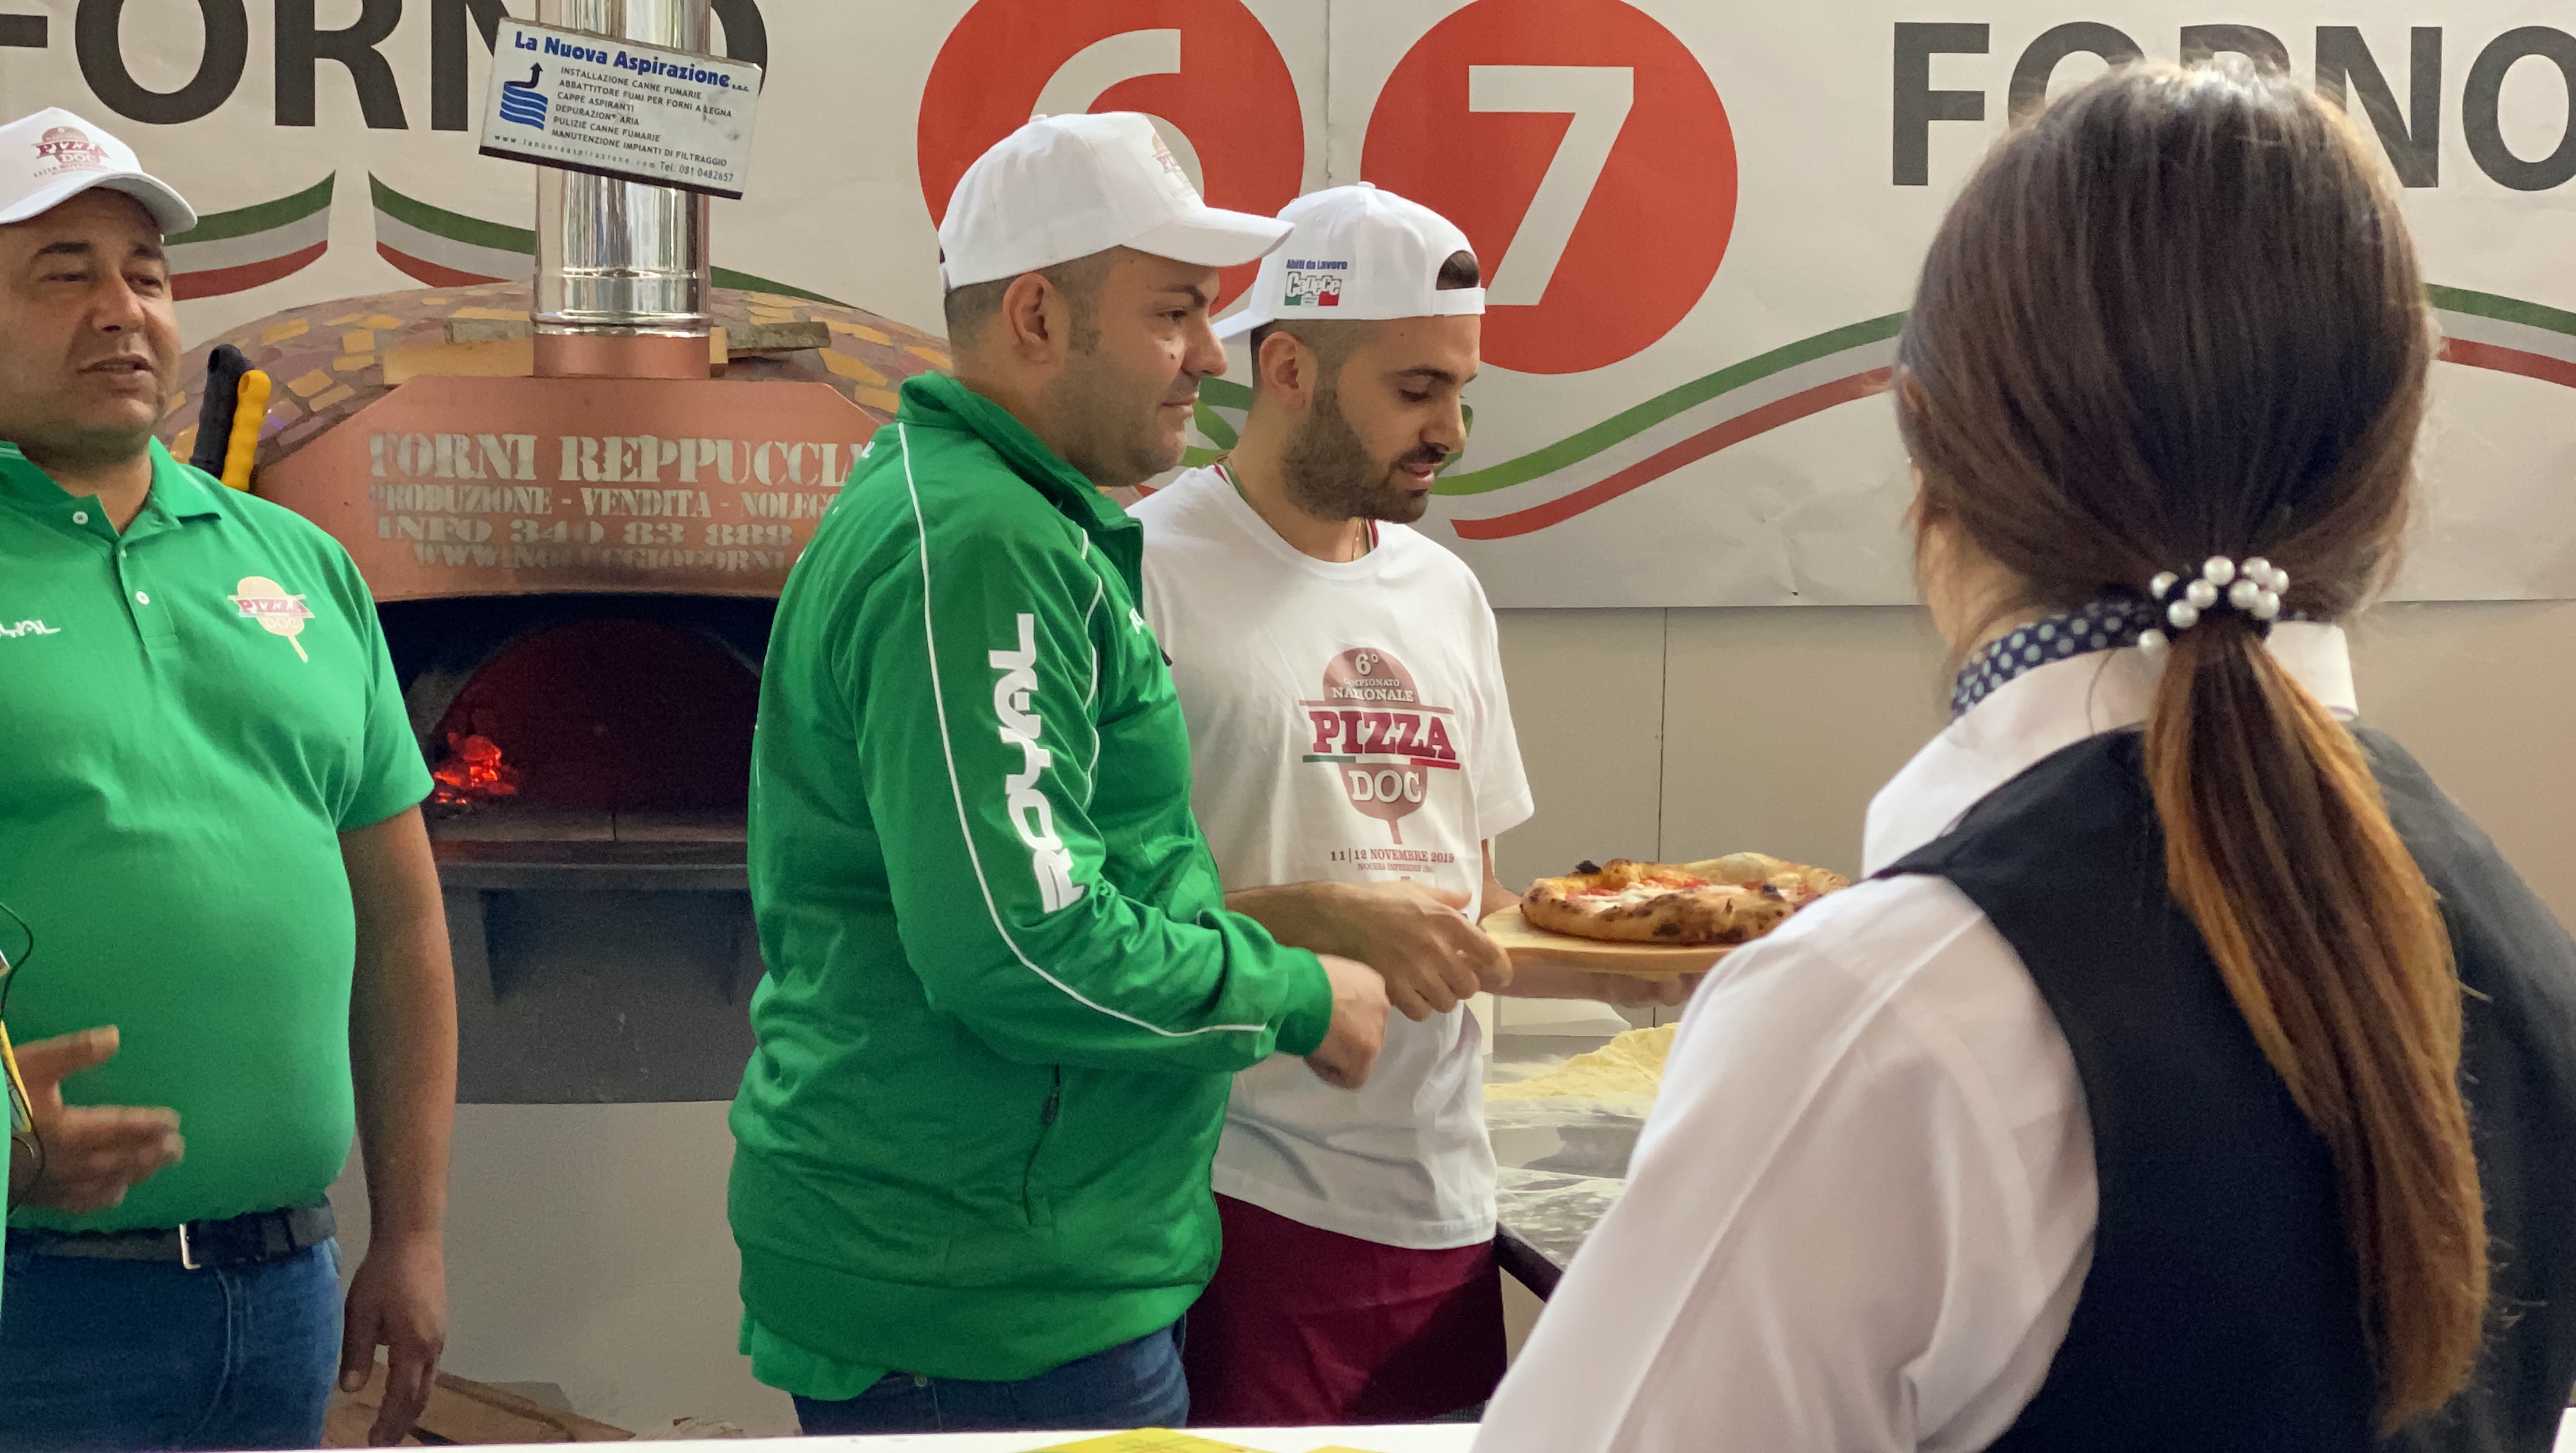 Benevento| Campionato nazionale pizza Doc, sesto posto per il pizzaiolo beneventano Cecere